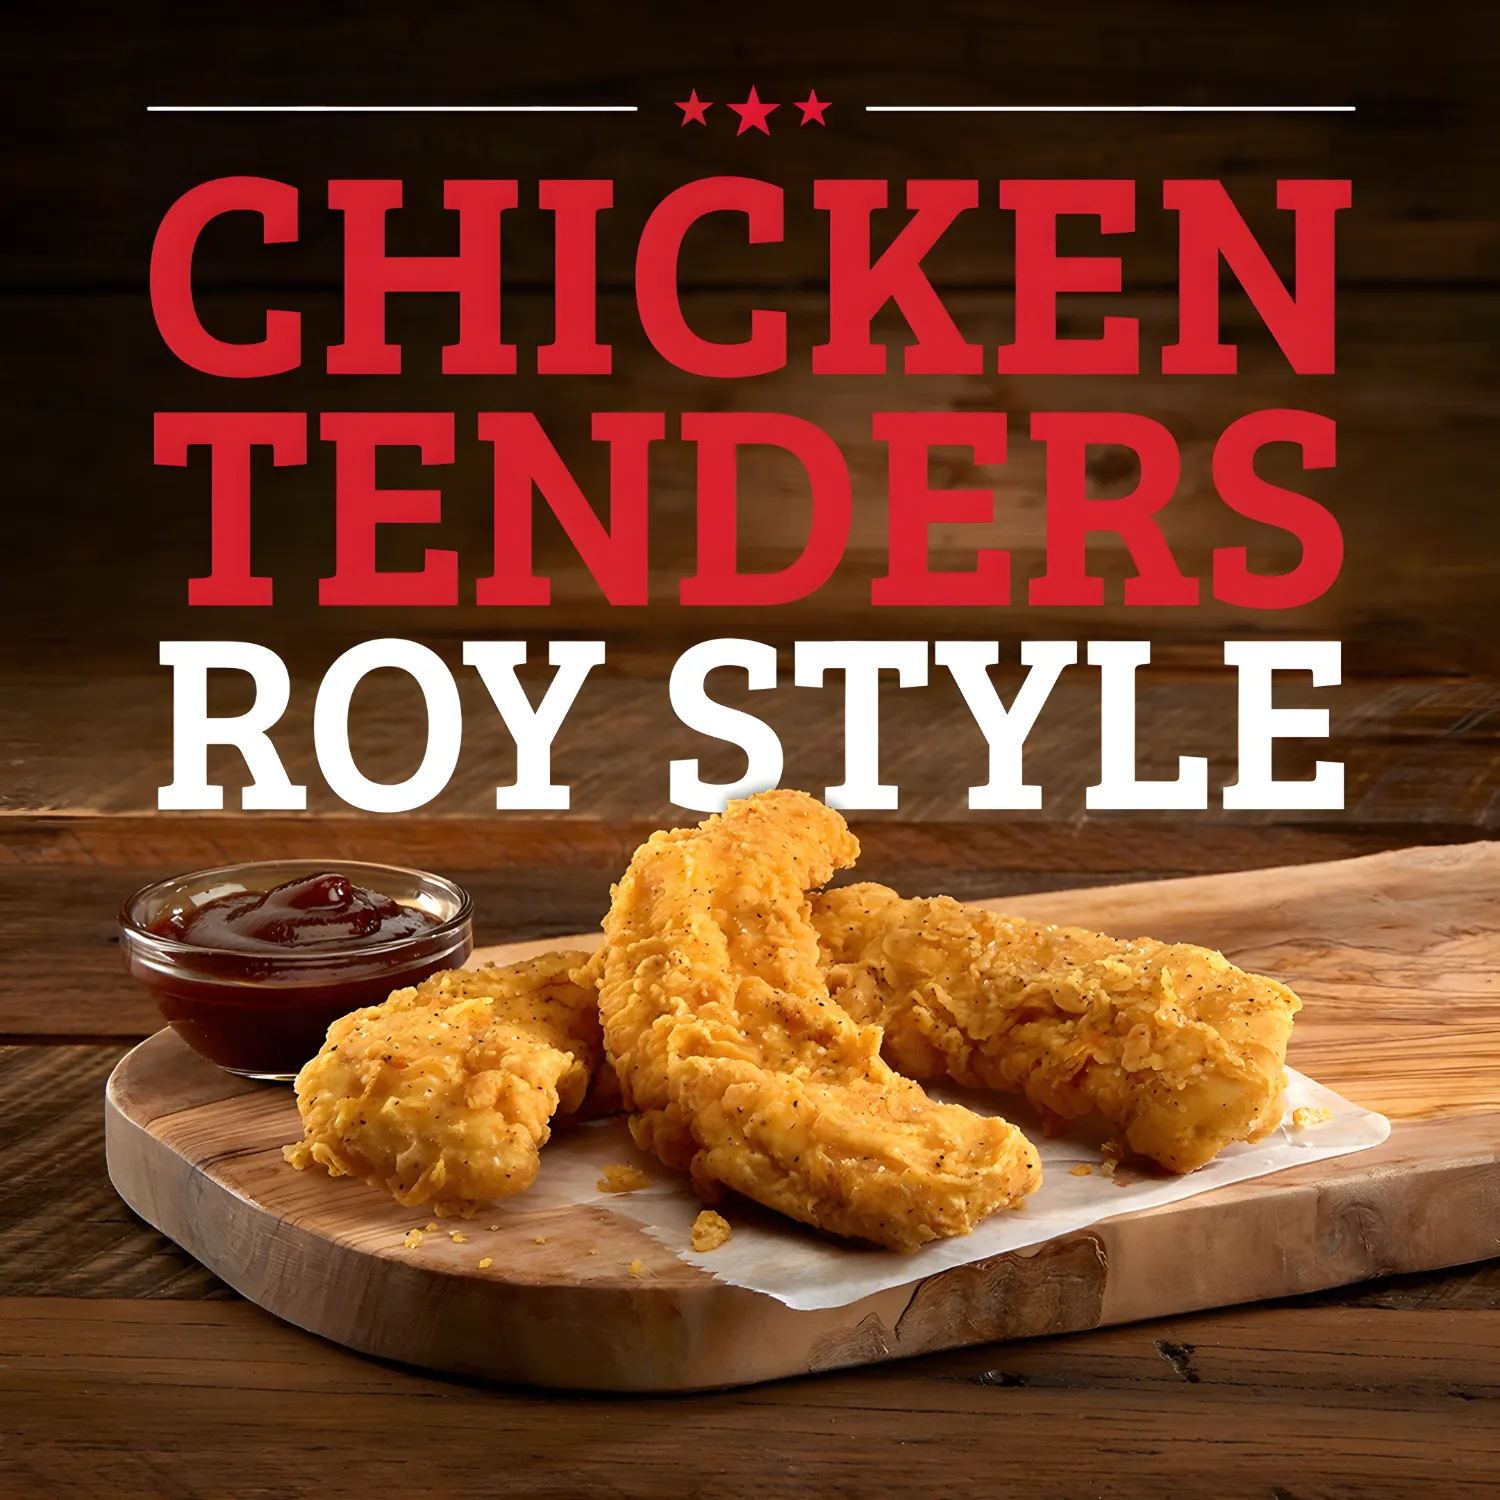 Free Roy Rogers' Chicken Tenders